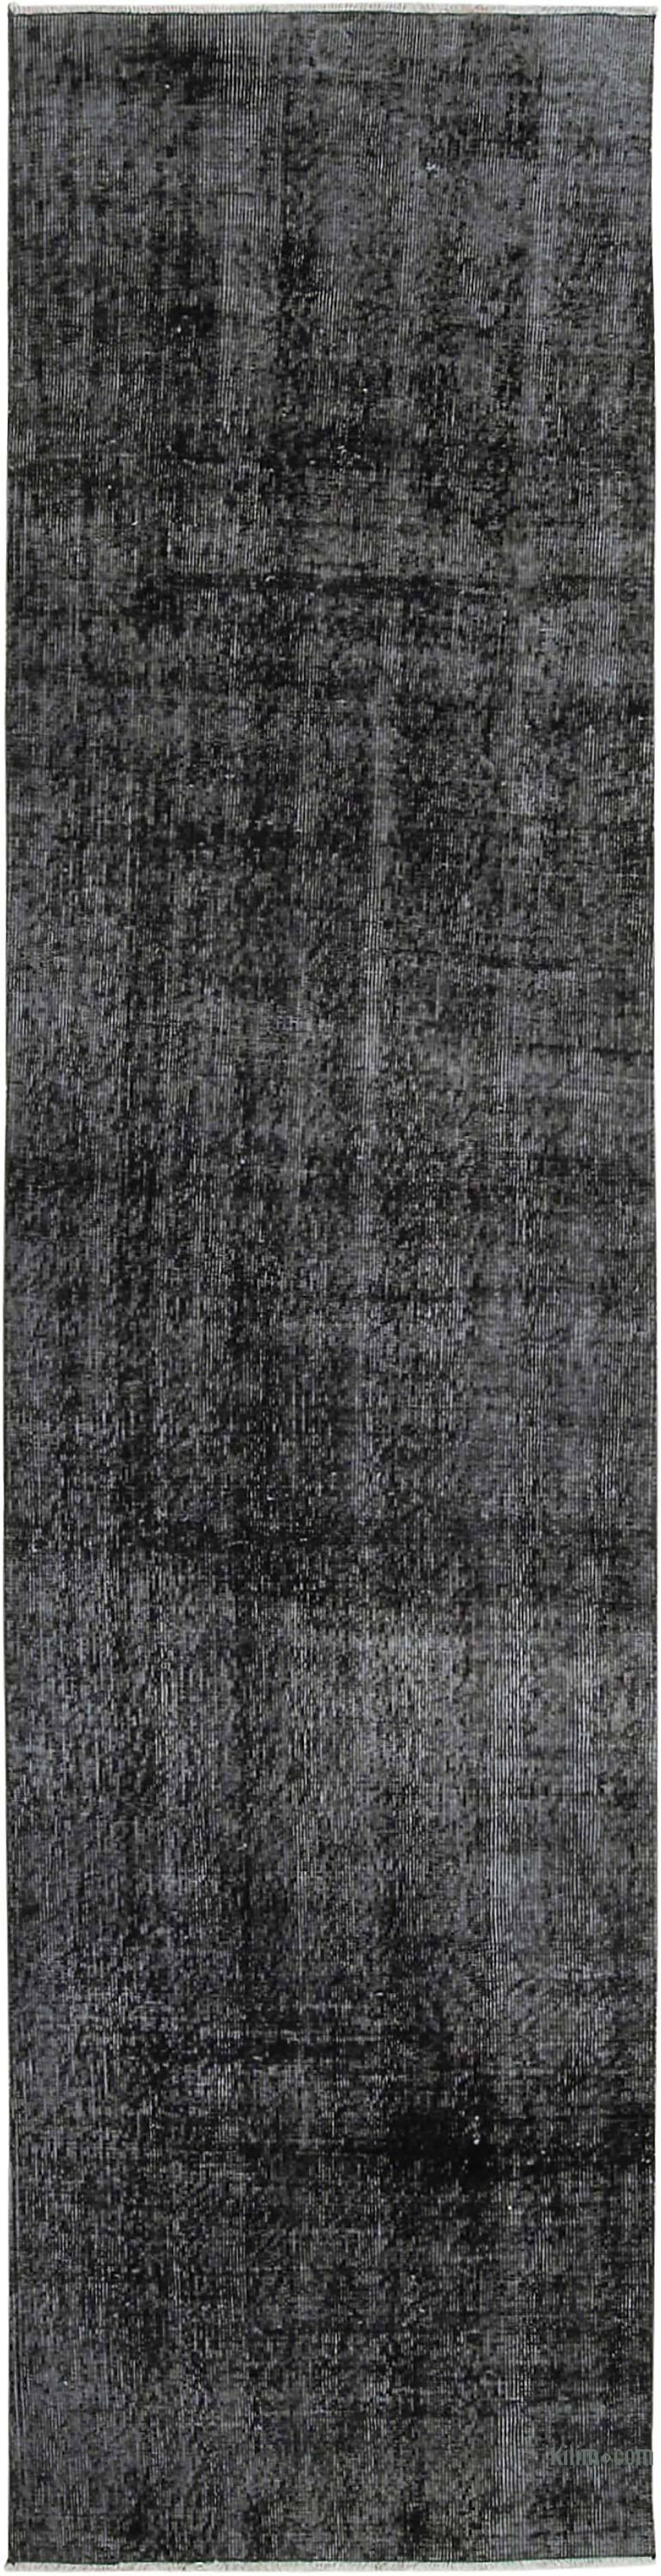 Negro Alfombra de Pasillo Turca Vintage Sobreteñida - 81 cm x 310 cm - K0054568